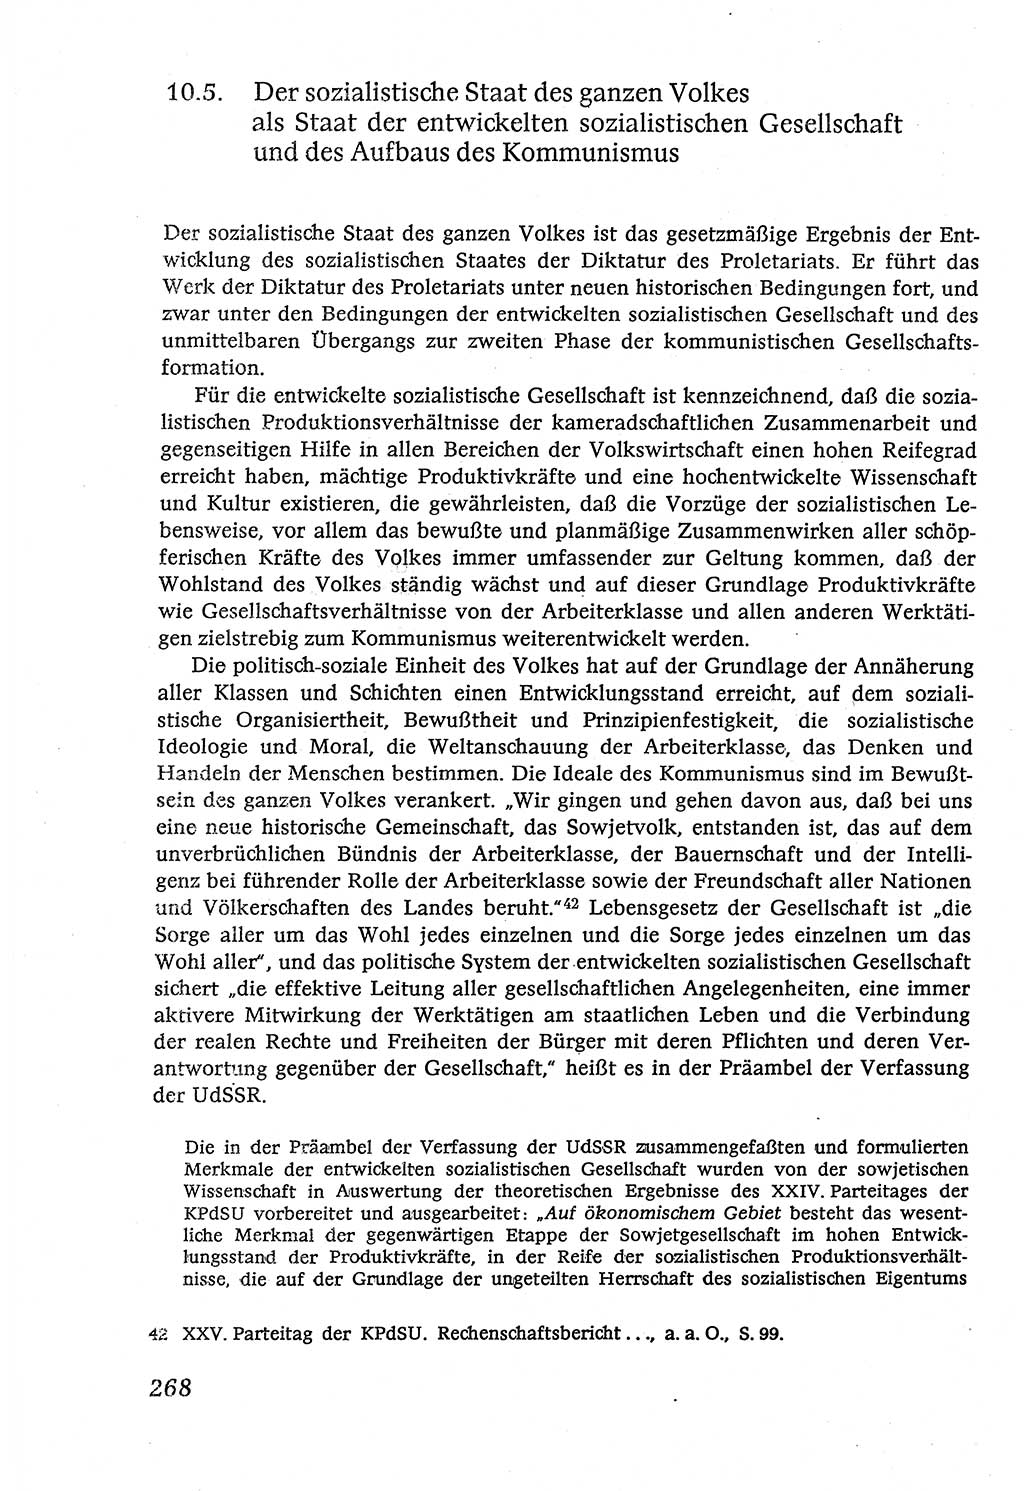 Marxistisch-leninistische (ML) Staats- und Rechtstheorie [Deutsche Demokratische Republik (DDR)], Lehrbuch 1980, Seite 268 (ML St.-R.-Th. DDR Lb. 1980, S. 268)